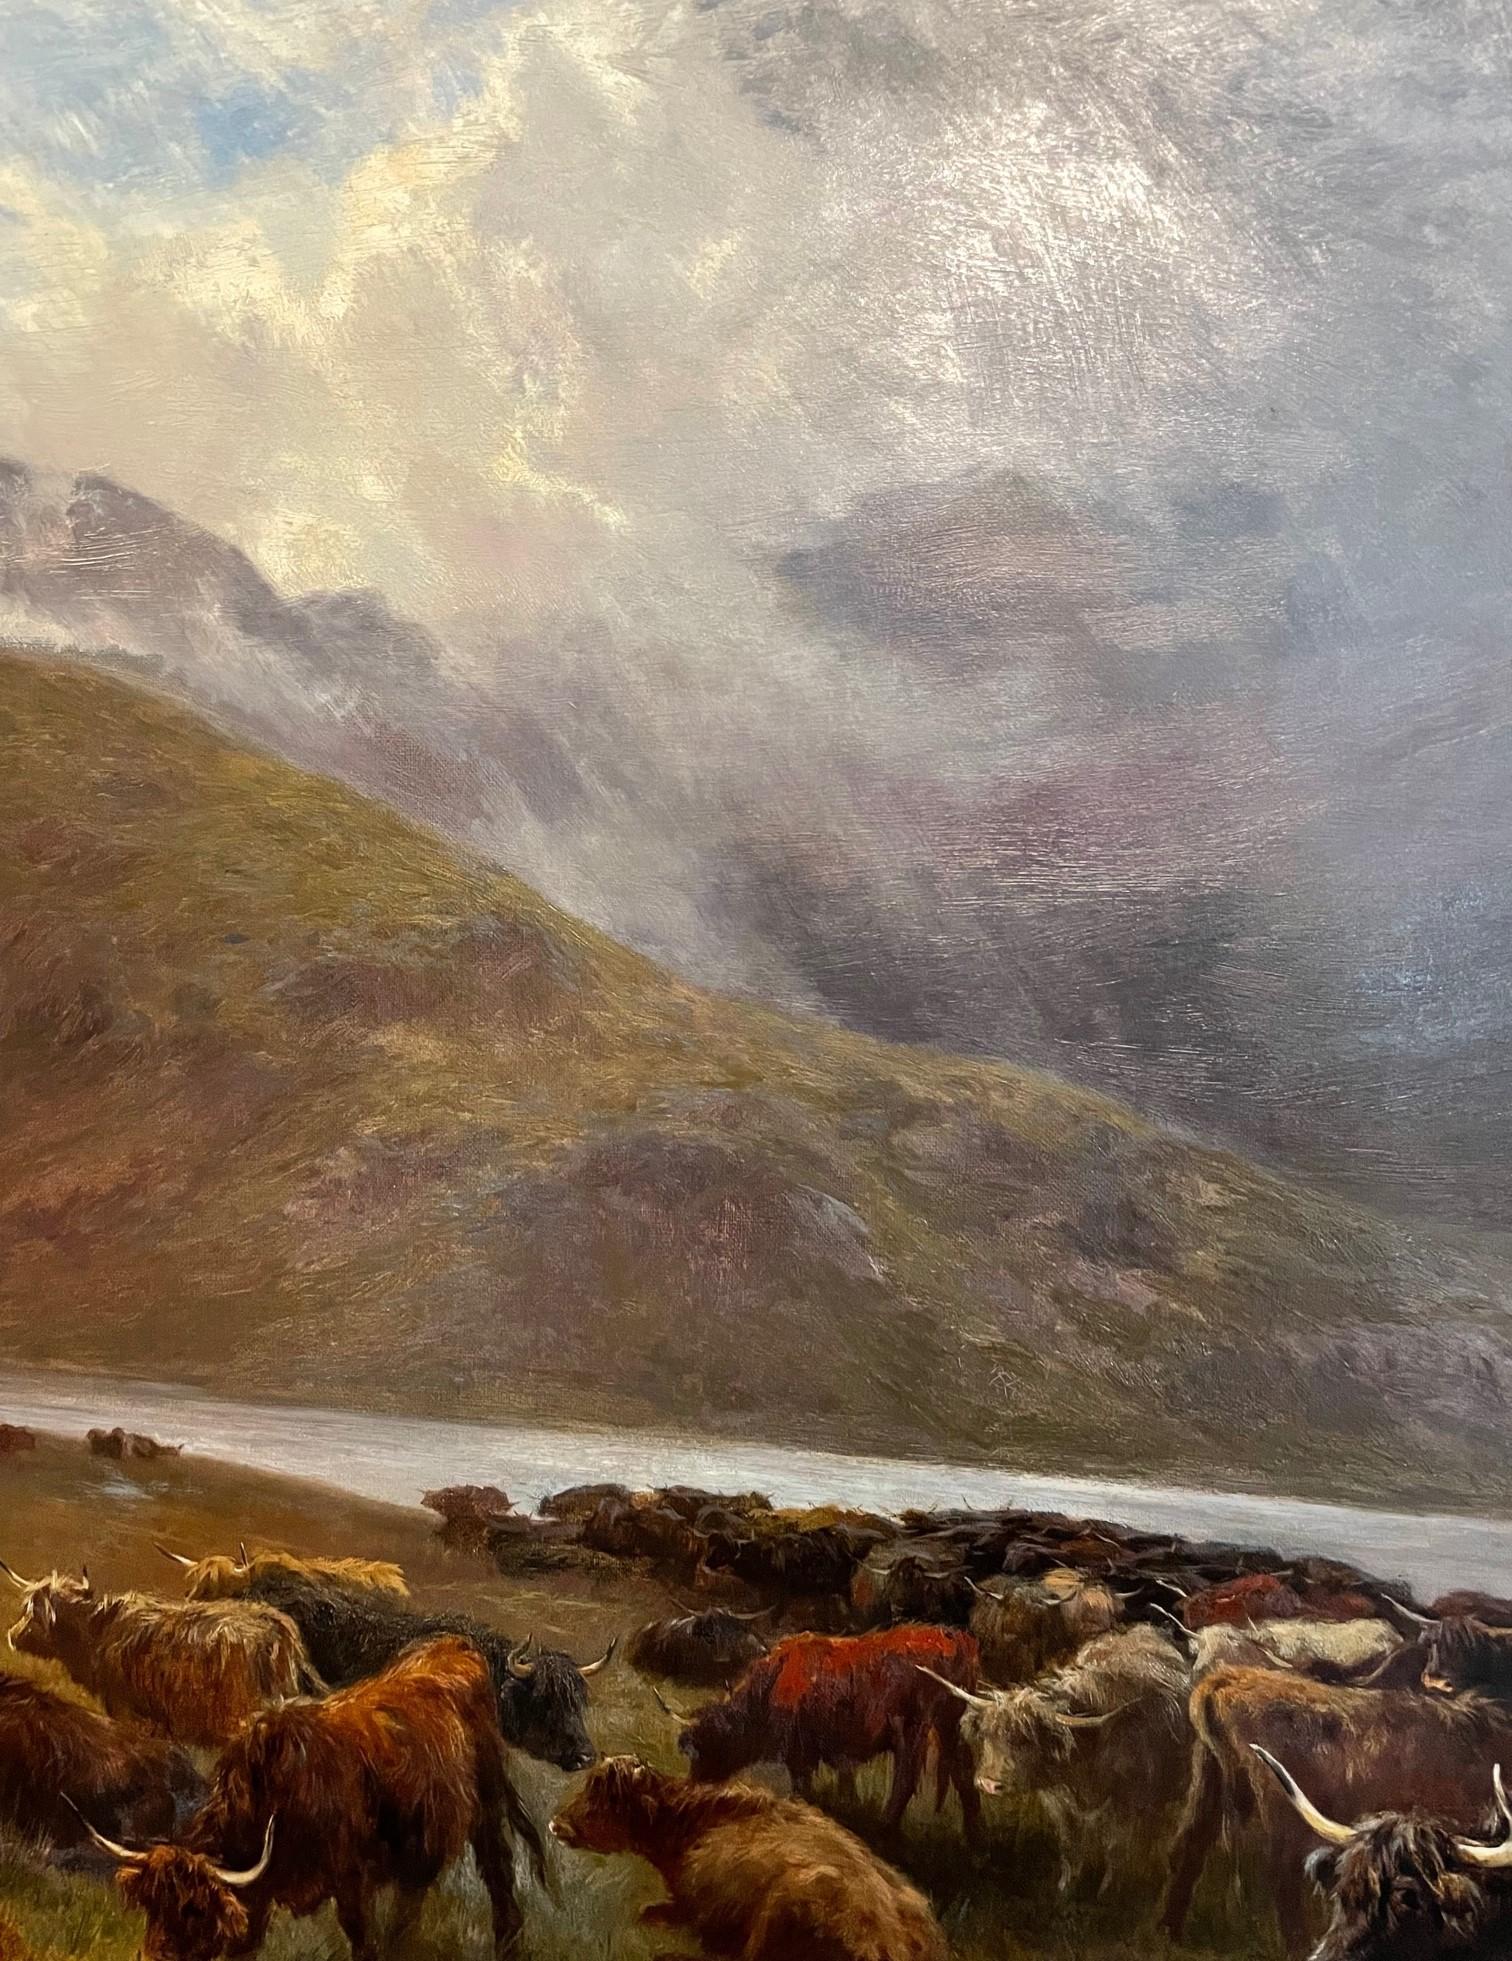 Garland, der für seine Landschaftsgemälde aus den Highlands bekannt war, genoss unter seinen Kollegen hohes Ansehen und präsentierte seine Werke in der Royal Academy, der Royal Society of British Artists und der British Institution.  Das Gemälde ist